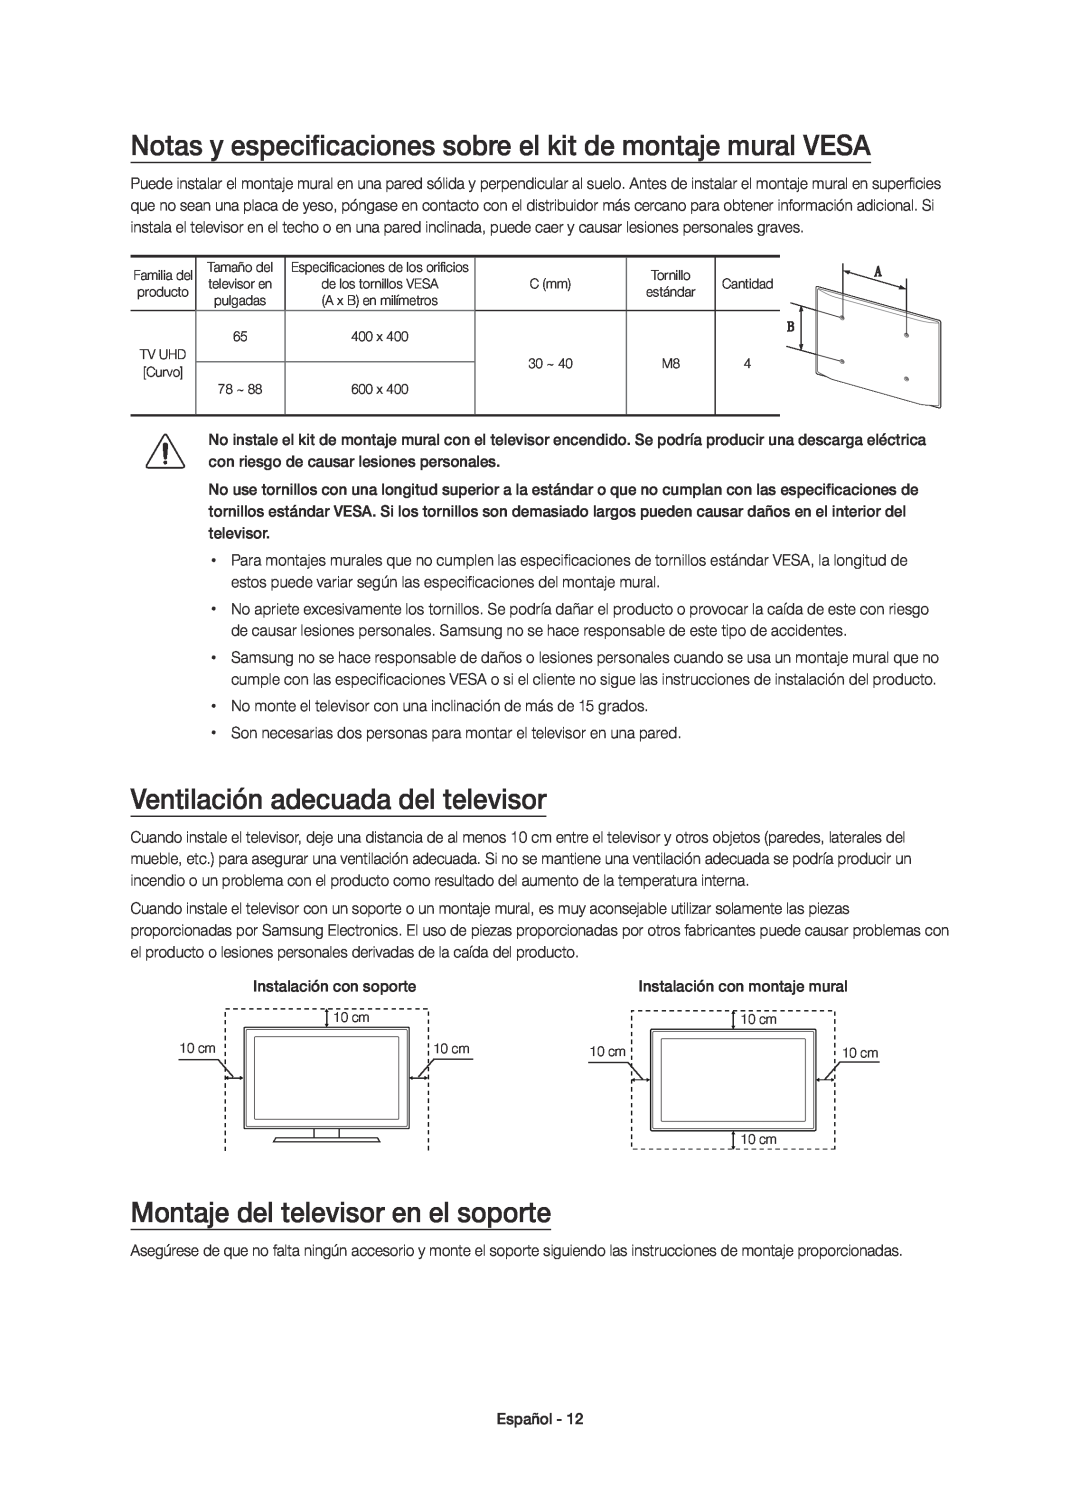 Samsung UE78JS9500TXZT Notas y especificaciones sobre el kit de montaje mural VESA, Ventilación adecuada del televisor 